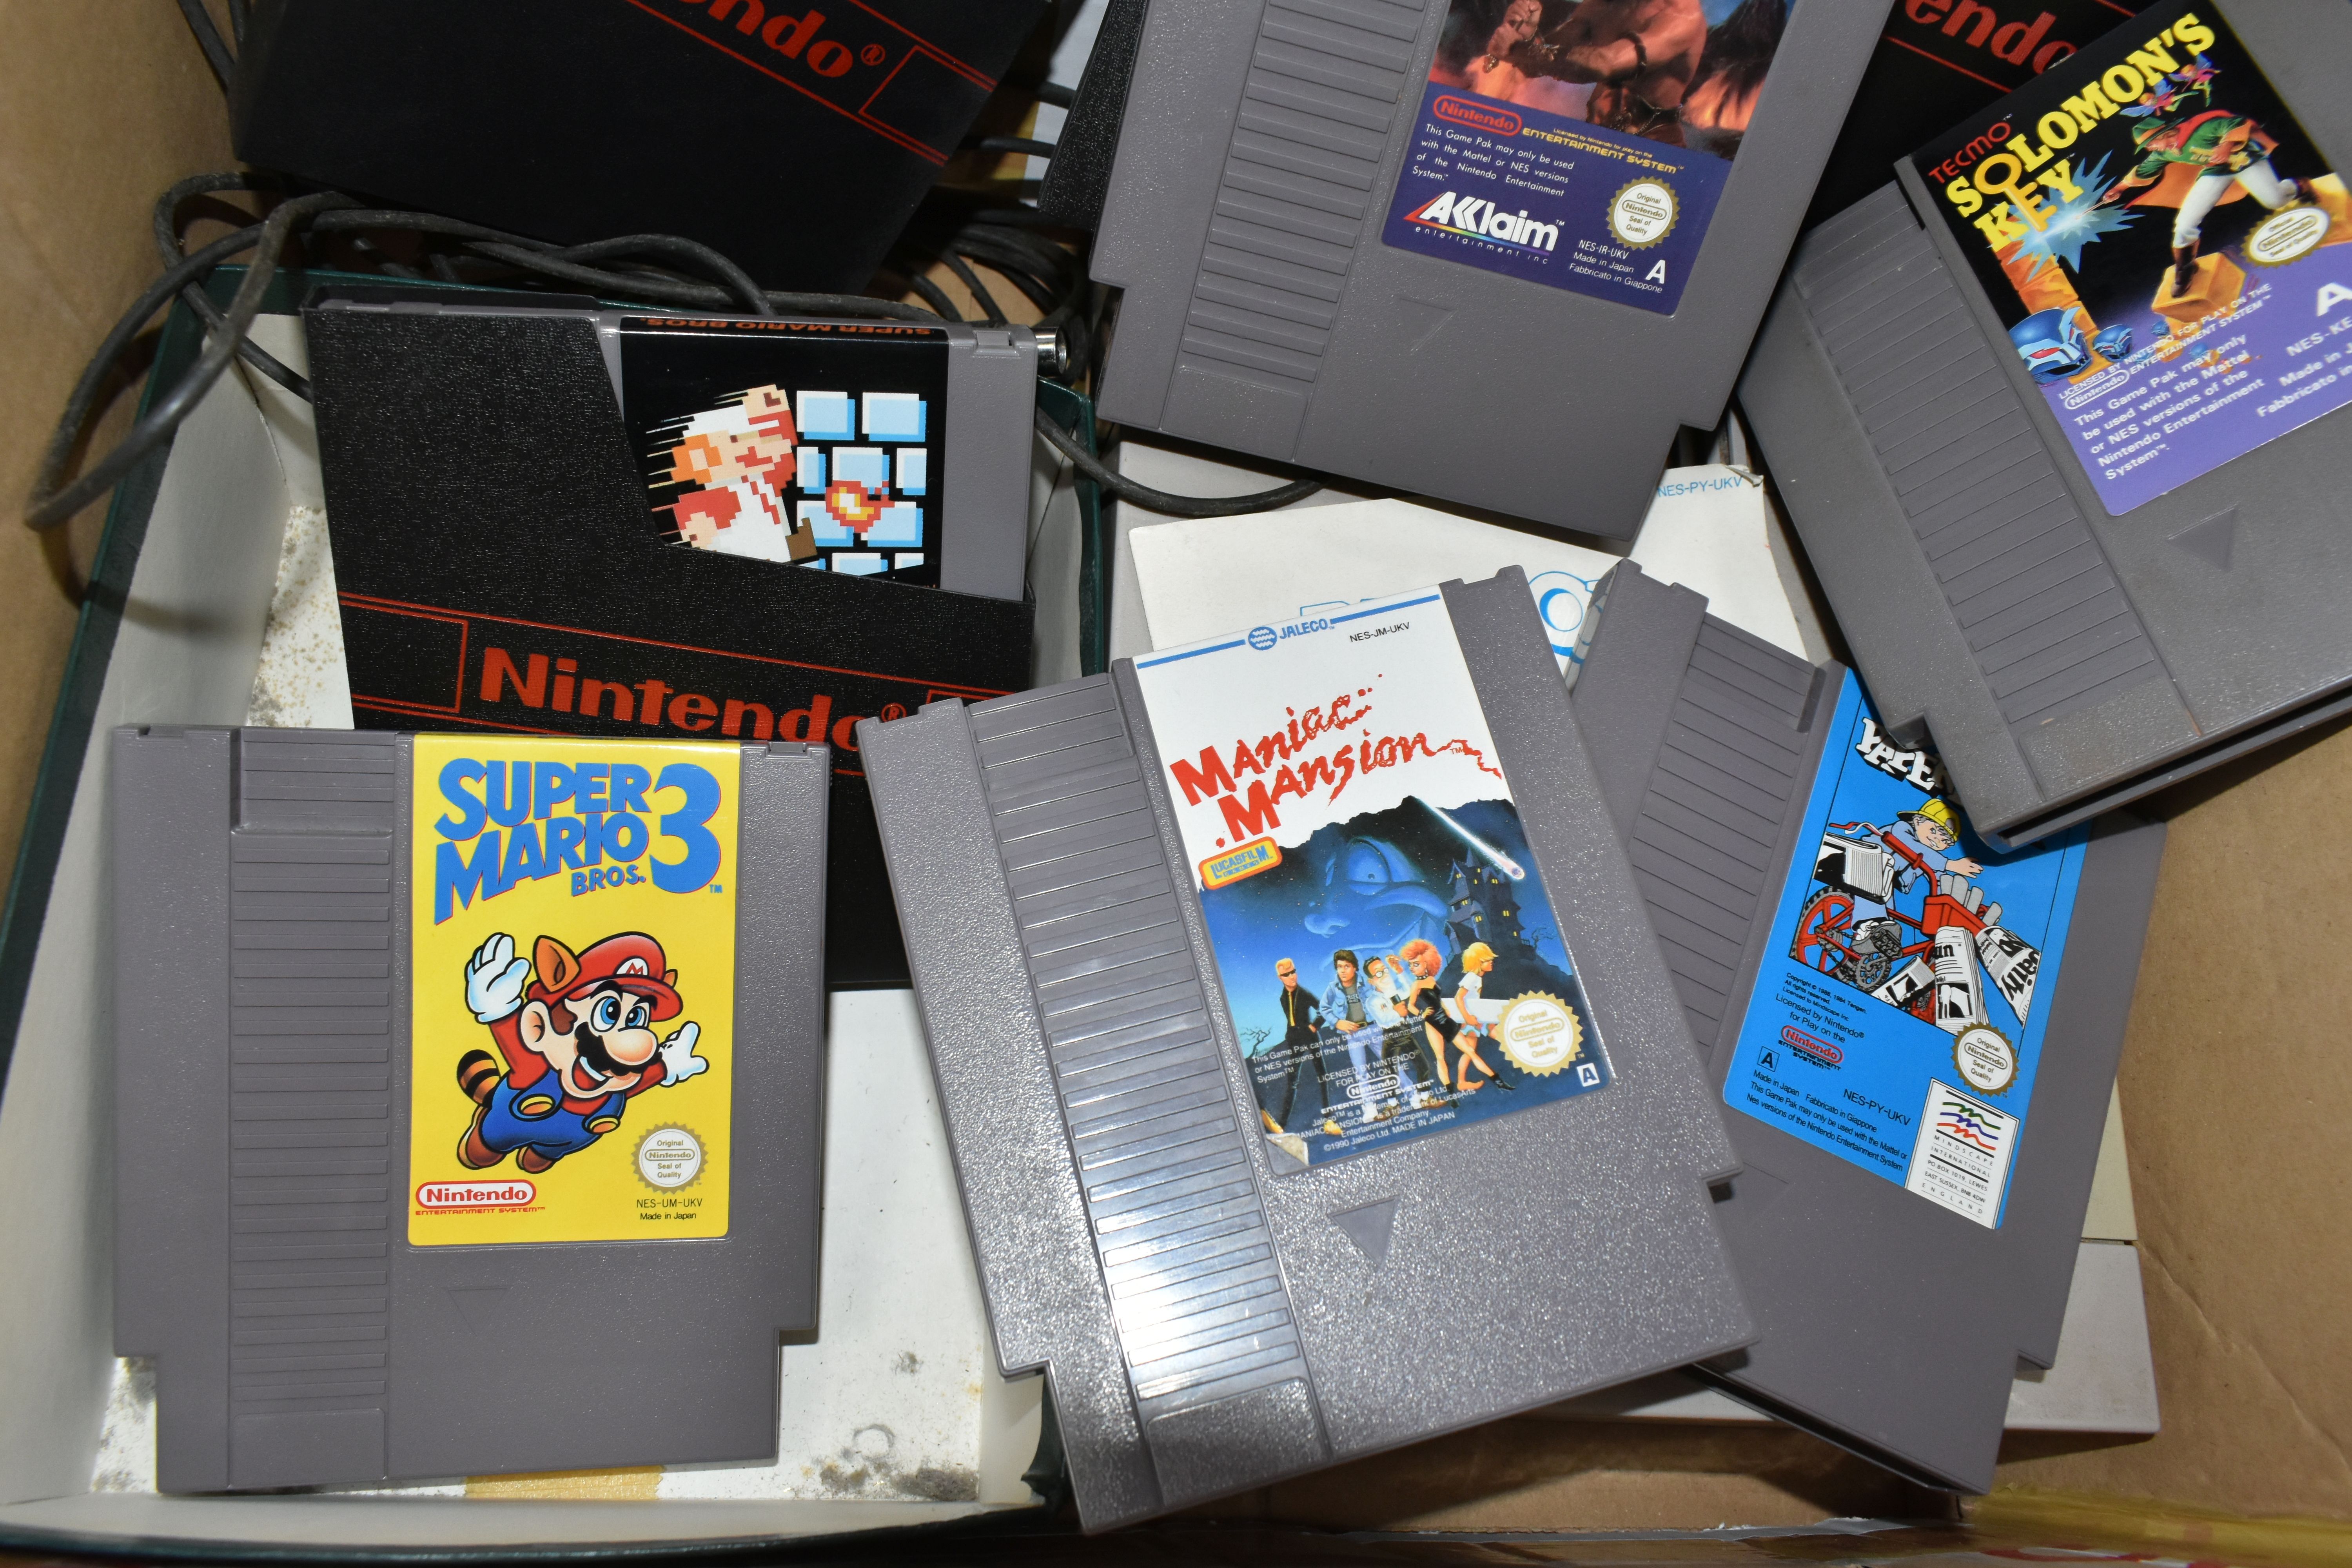 NINTENDO NES CONSOLE AND GAMES, includes Super Mario Bros, Super Mario Bros 3, Double Dragon, - Image 3 of 5